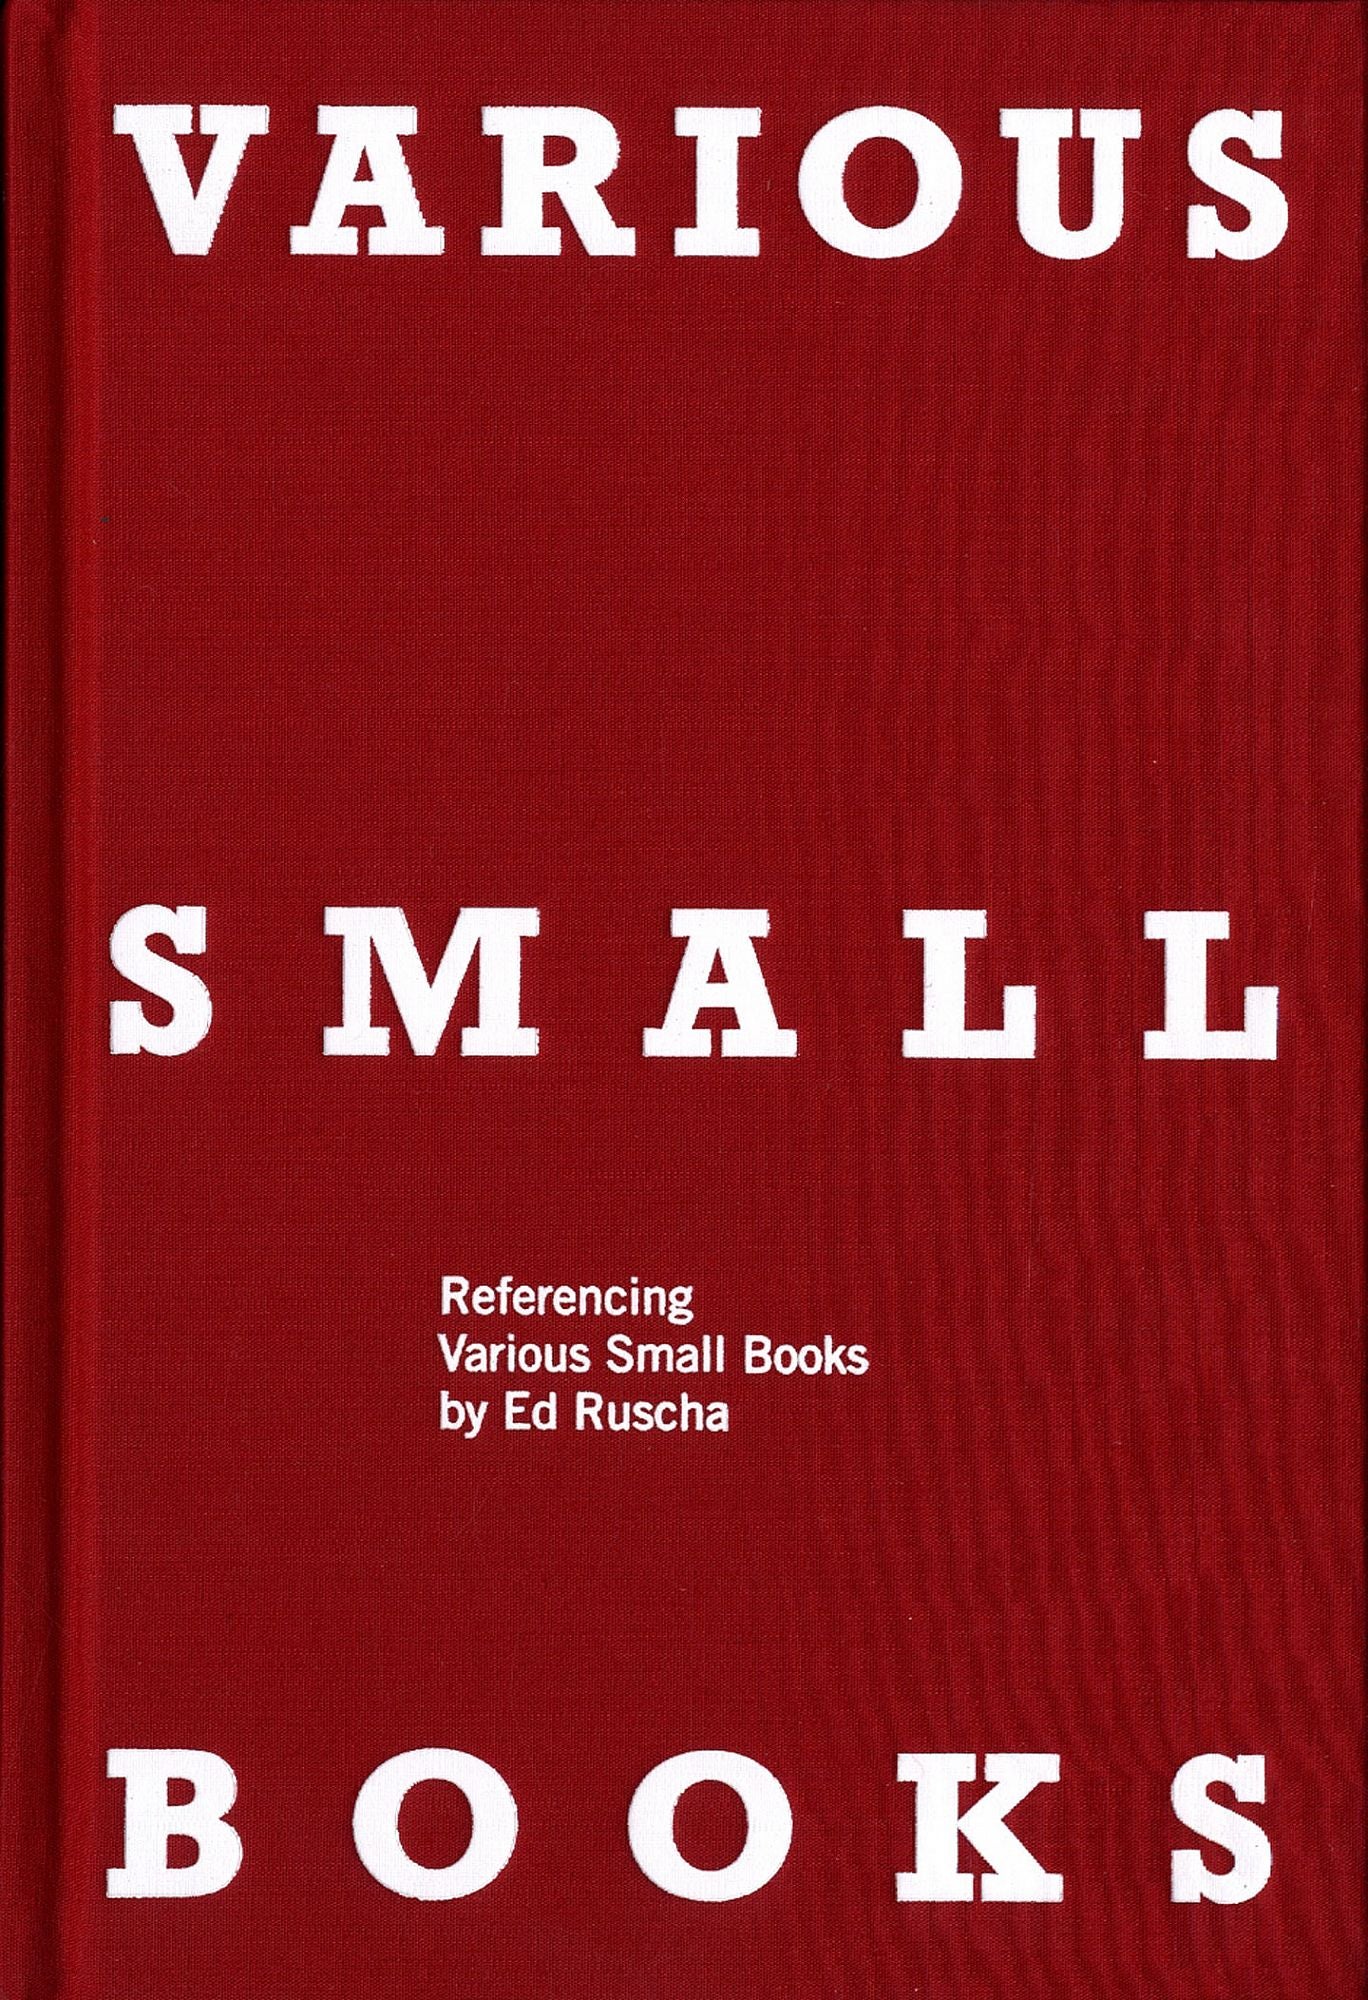 Small books